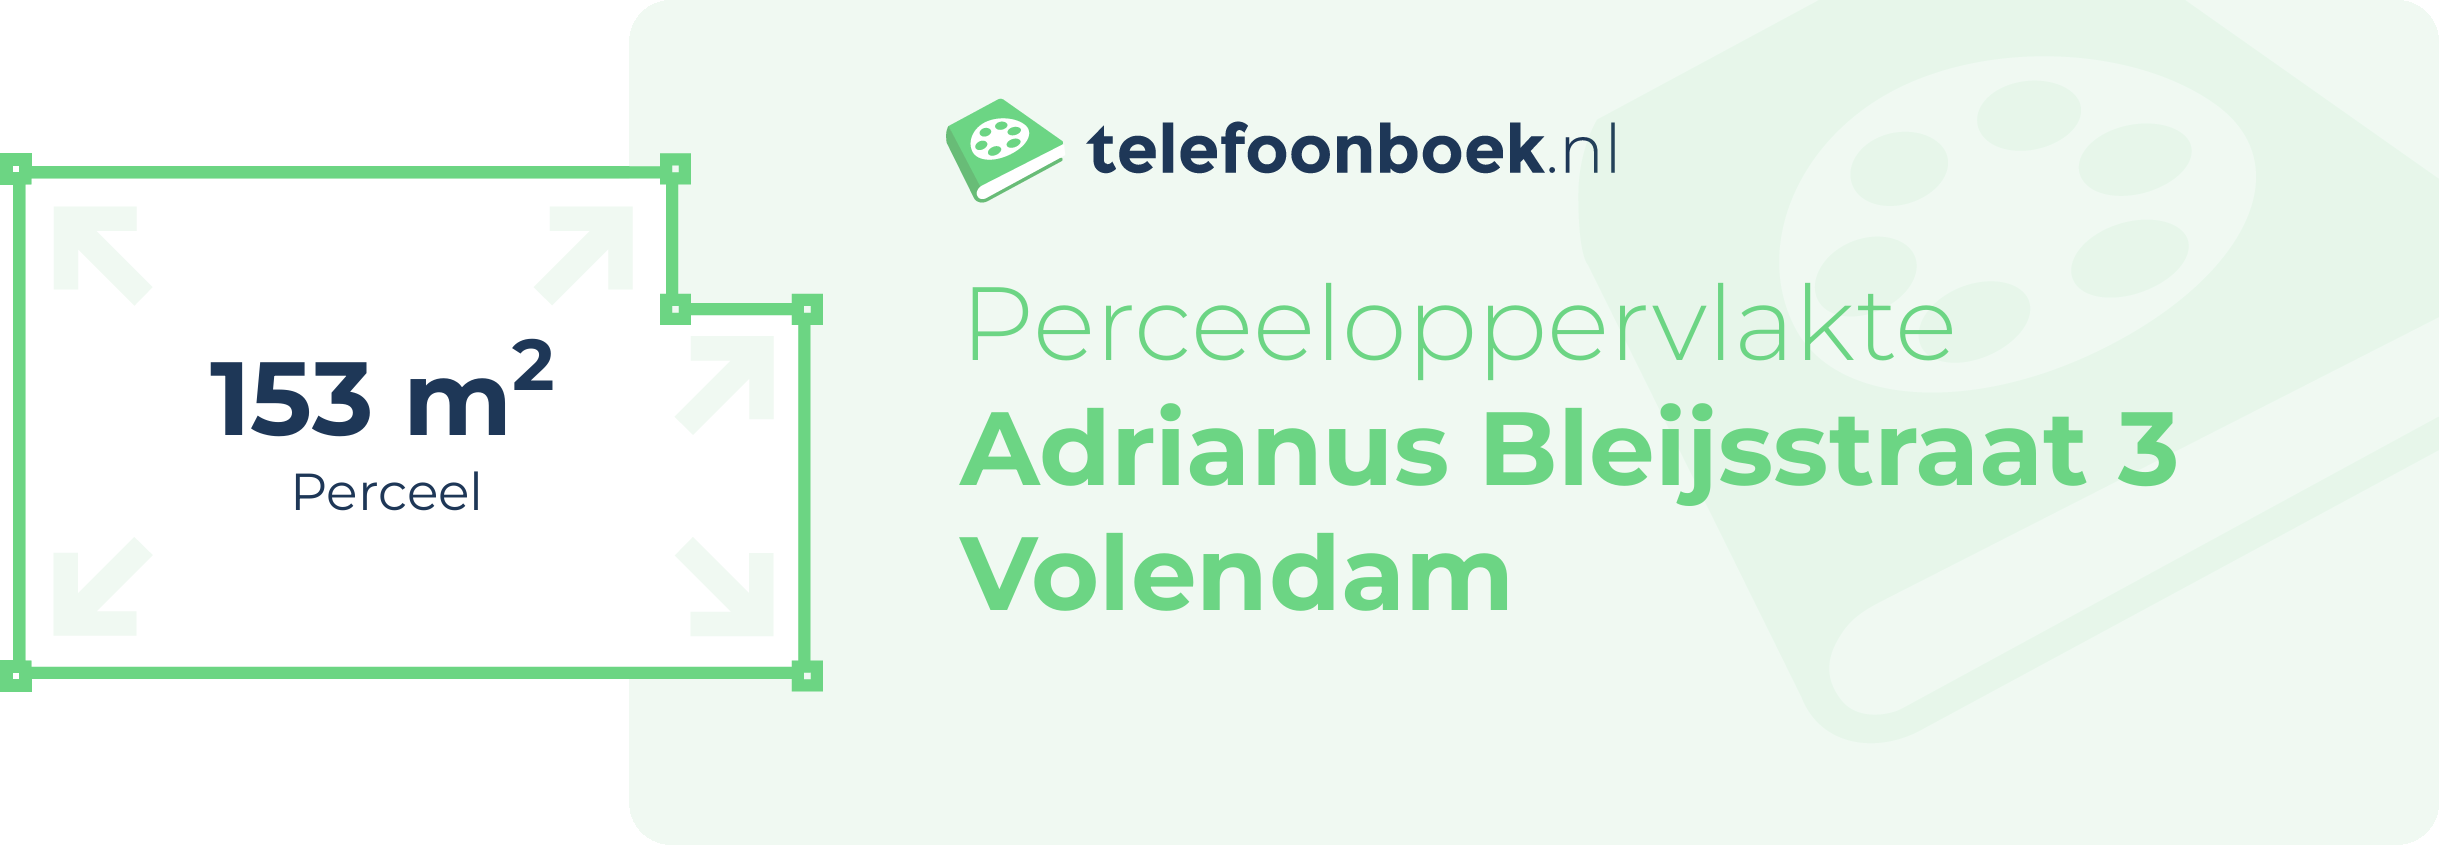 Perceeloppervlakte Adrianus Bleijsstraat 3 Volendam